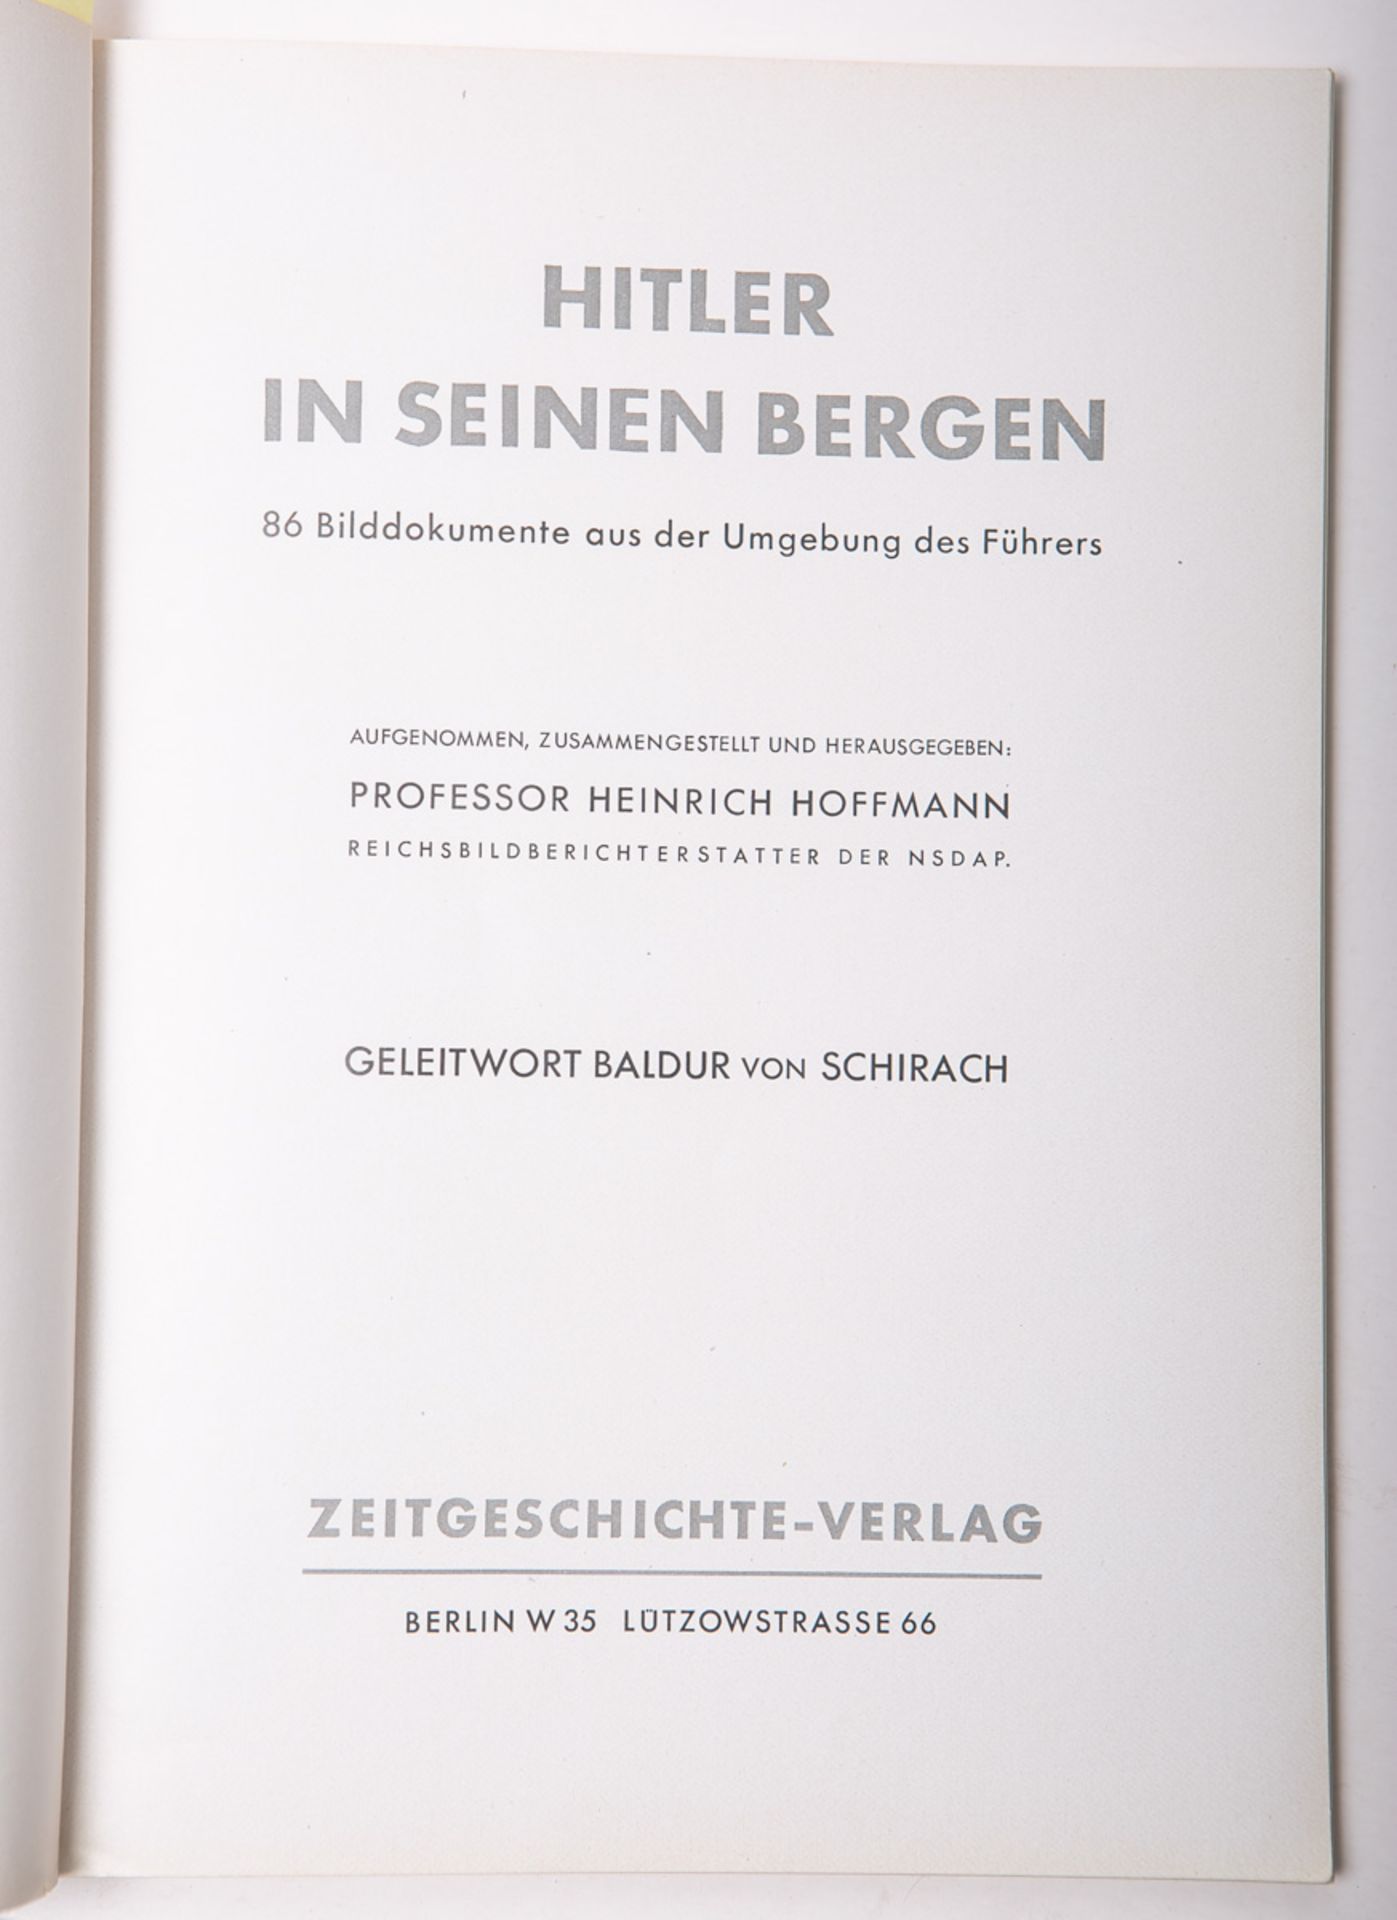 Hoffmann, Heinrich (Hrsg.), "Hitler in seinen Bergen" - Image 2 of 2